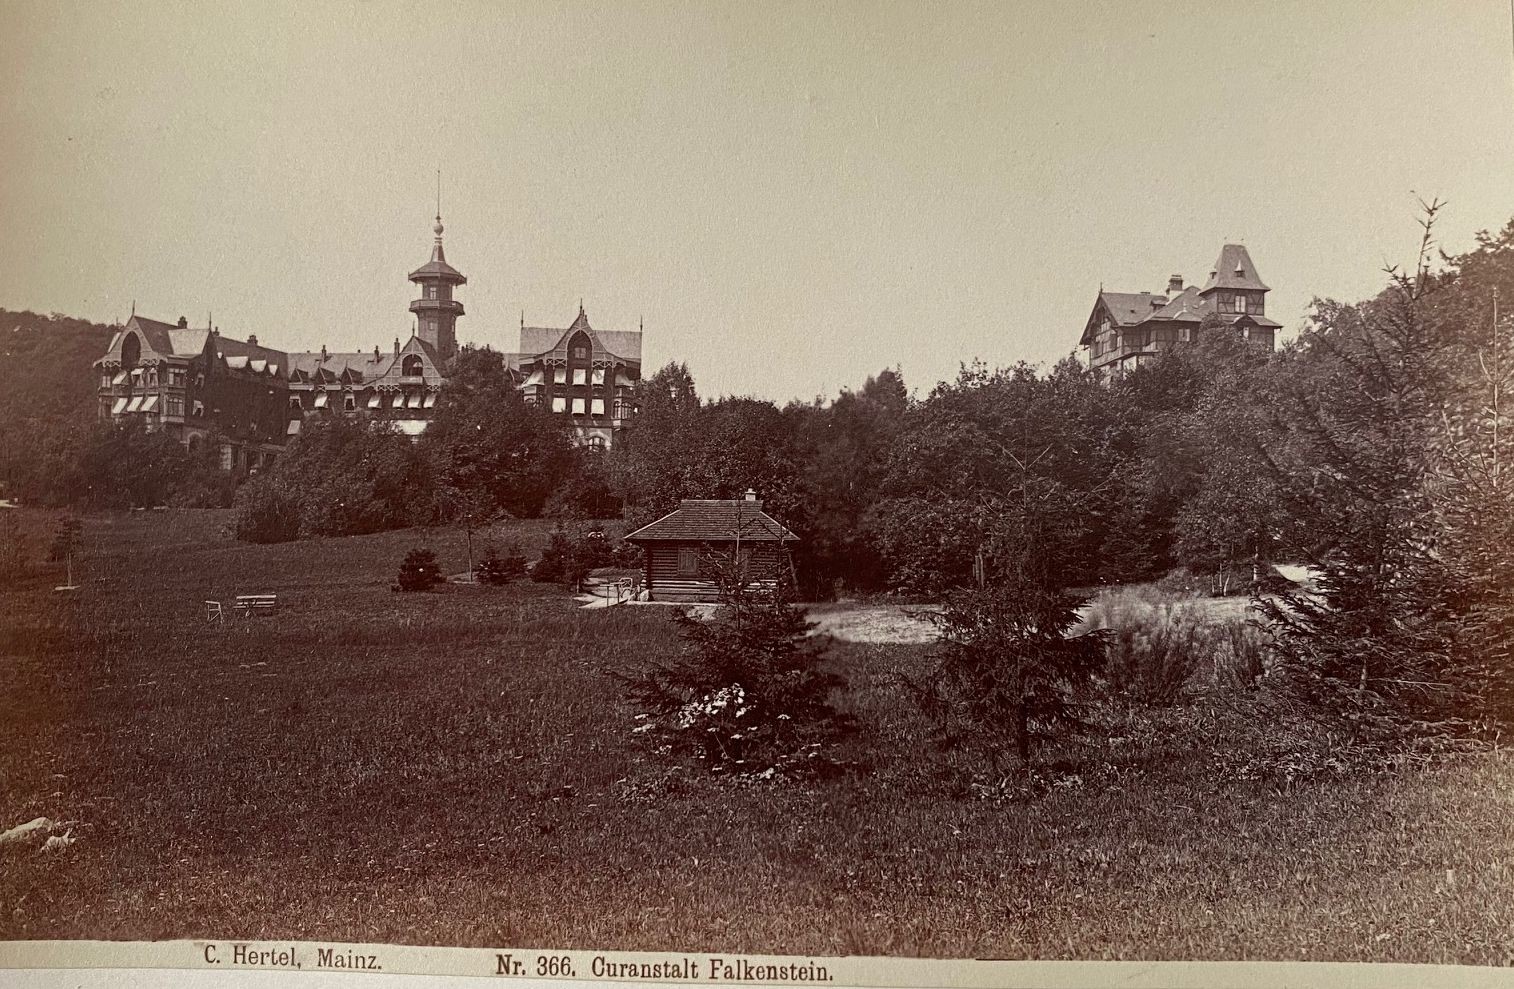 Fotografie, Carl Hertel No. 366, Curanstalt Falkenstein, ca. 1885 (Taunus-Rhein-Main - Regionalgeschichtliche Sammlung Dr. Stefan Naas CC BY-NC-SA)